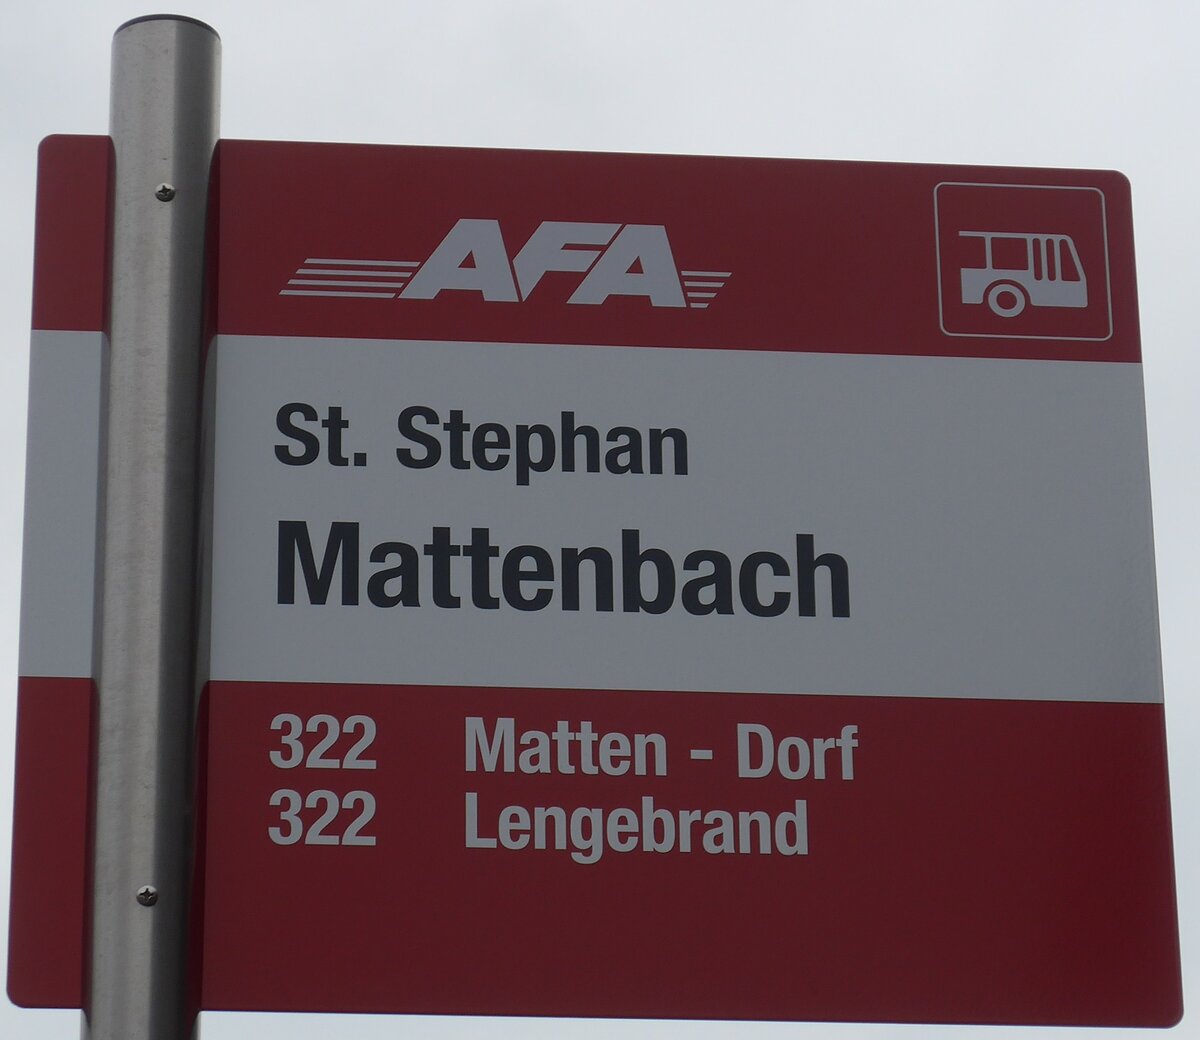 (200'648) - AFA-Haltestellenschild - St. Stephan, Mattenbach - am 6. Januar 2019